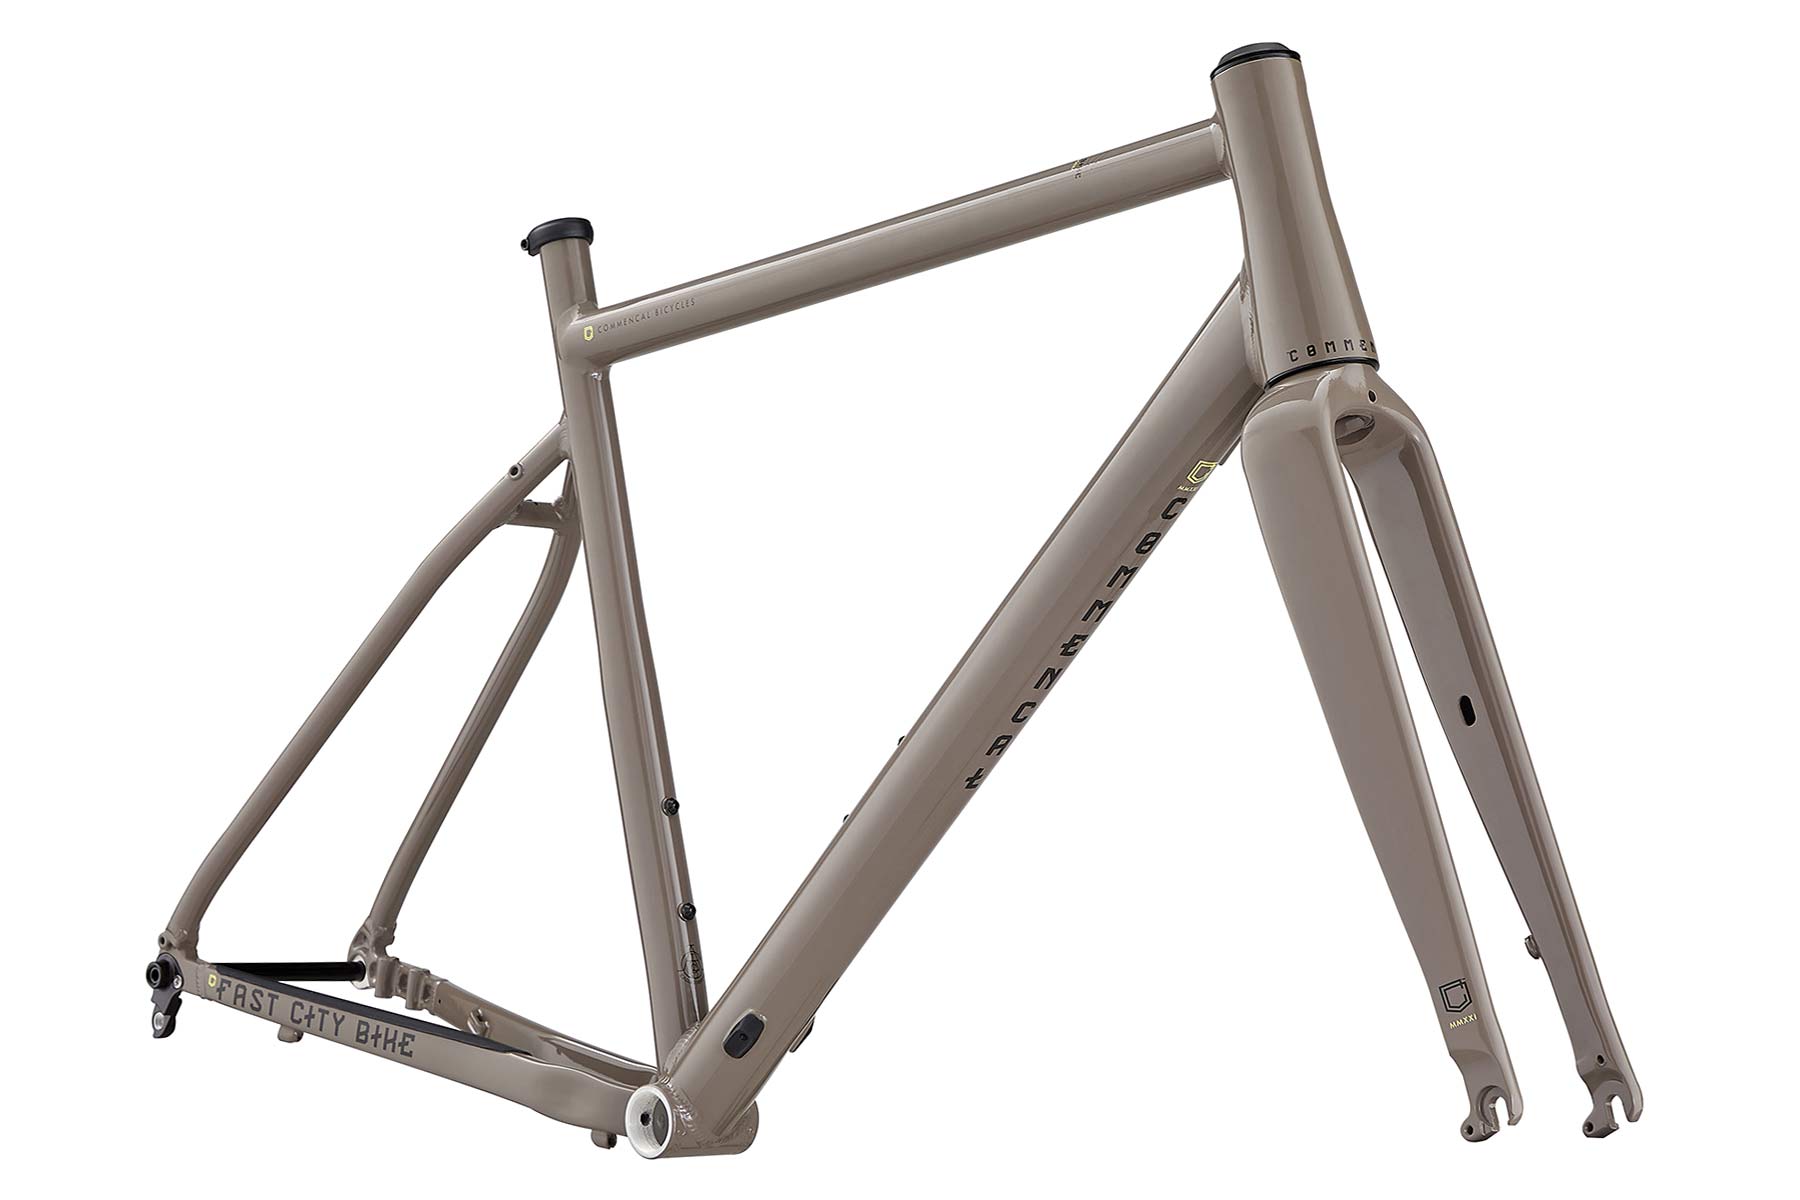 Commencal FCB Gravel project frameset, frame kit option, custom gravel bike build, Dirt brown frame